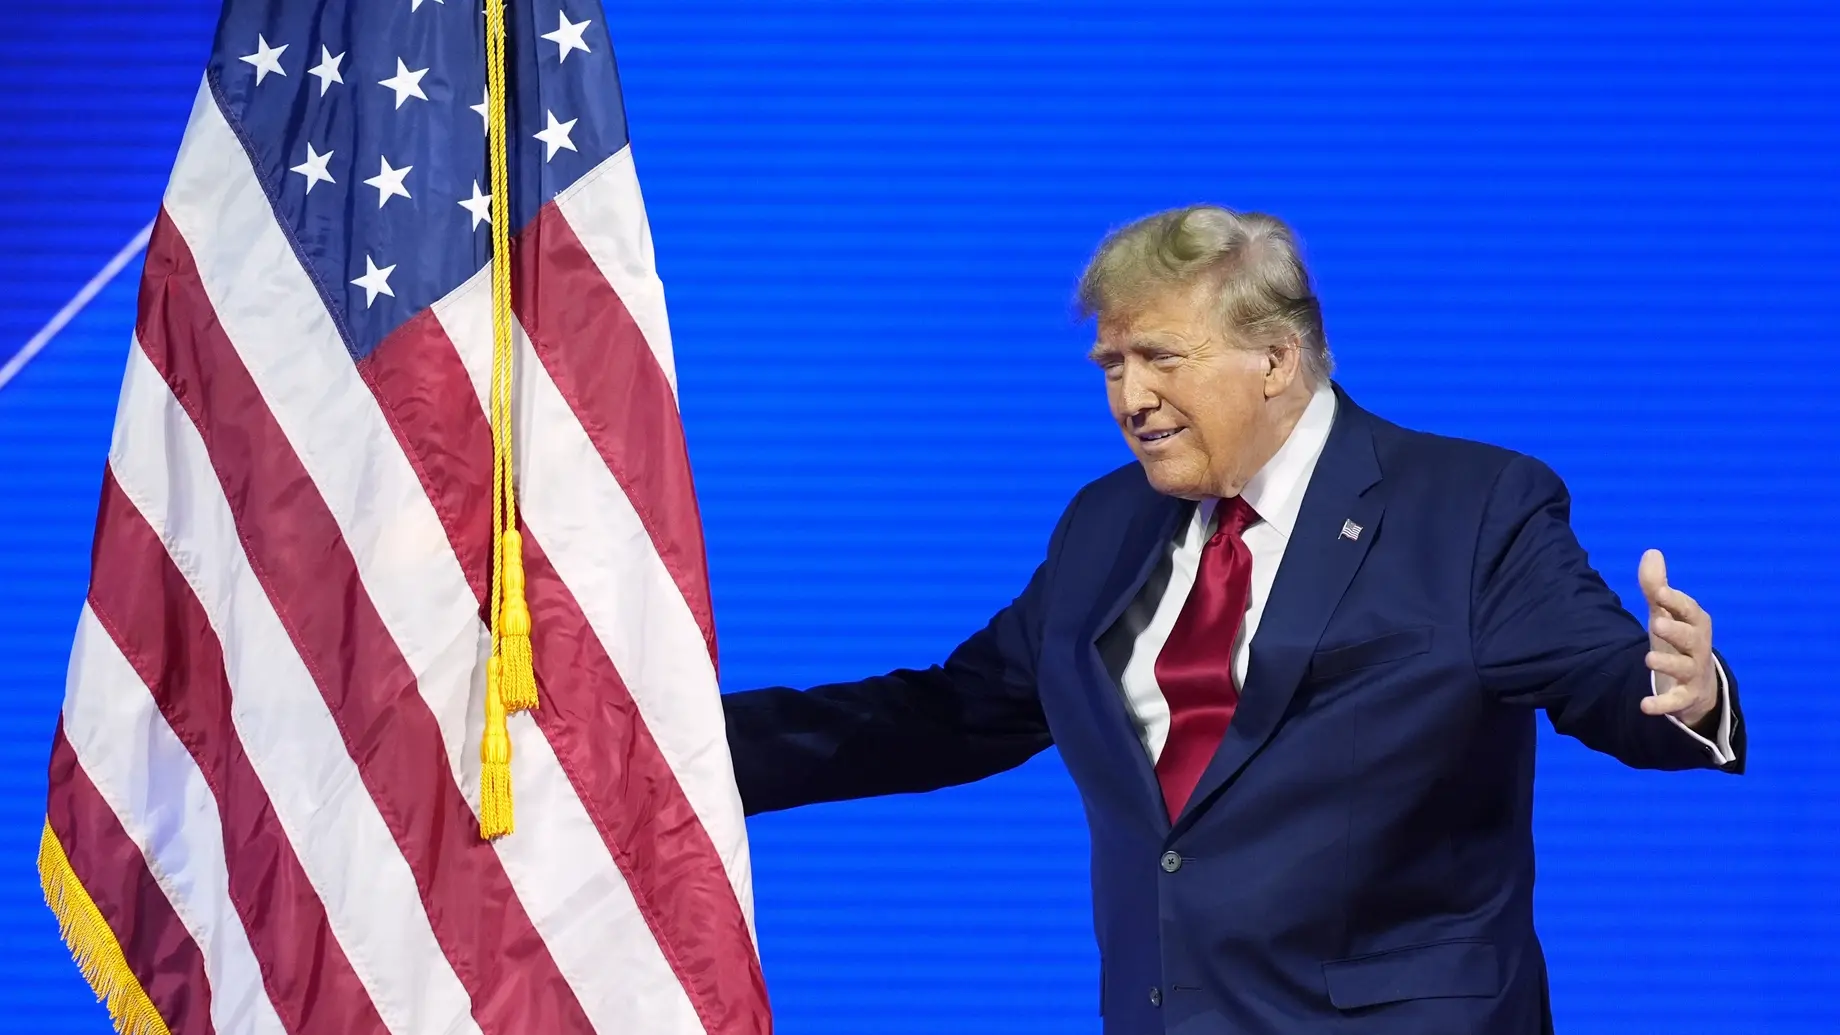 Donald Trump mit ausschweifender Handgeste neben der USA-Flagge